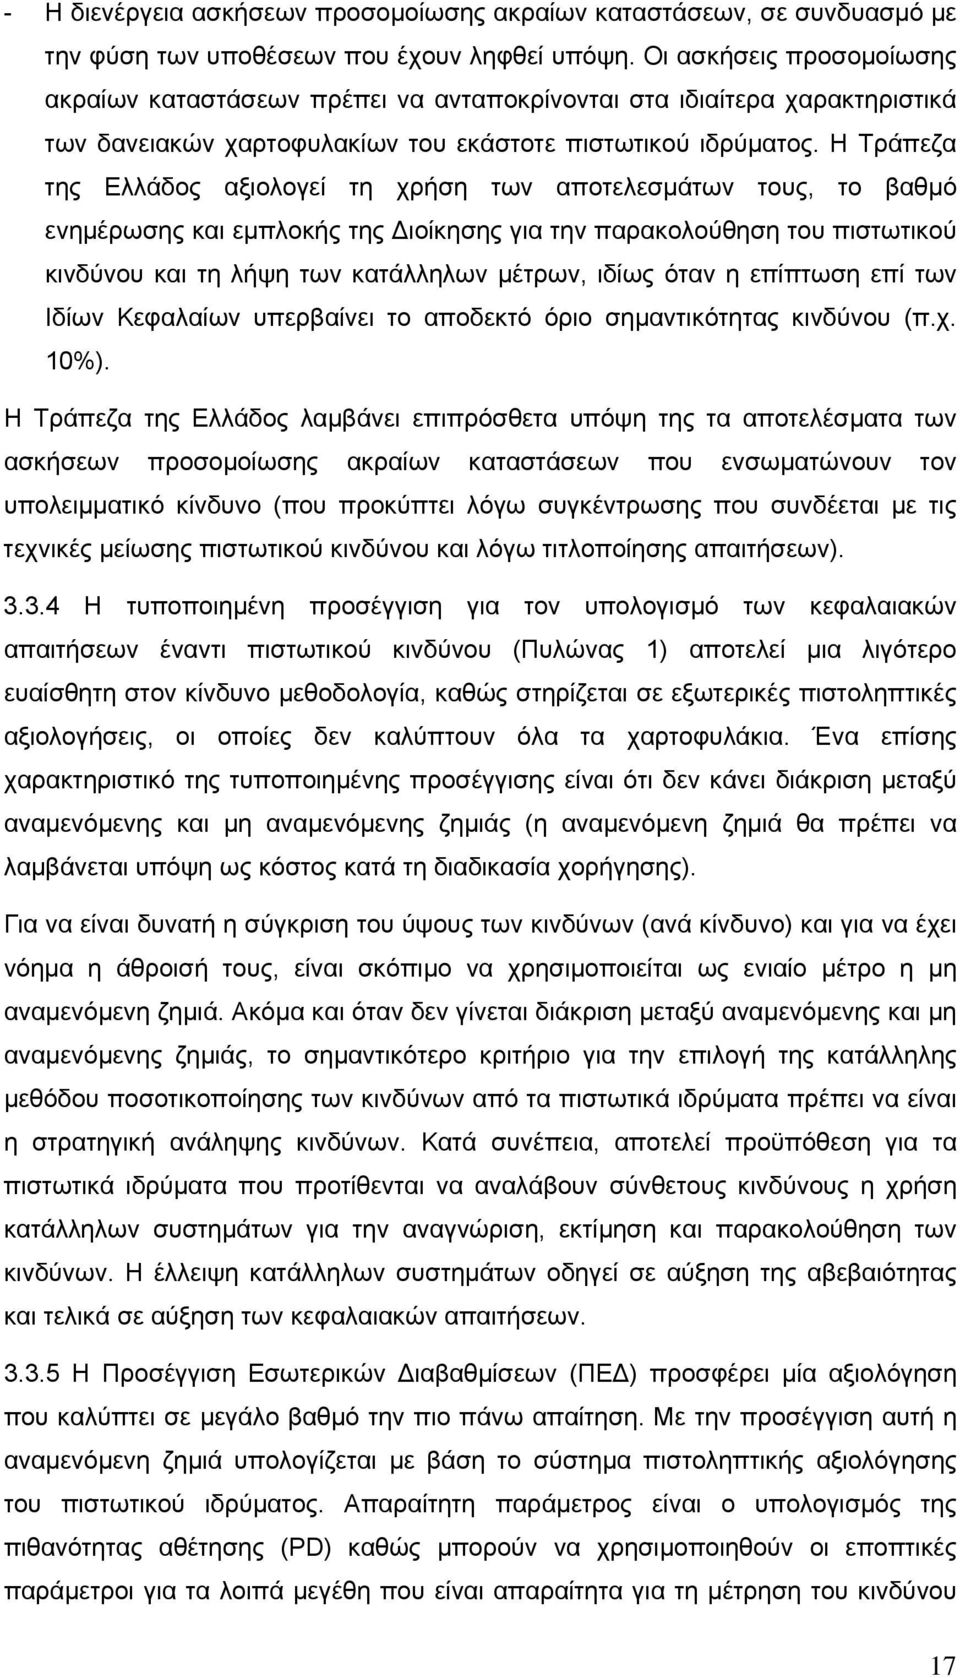 Η Τράπεζα της Ελλάδος αξιολογεί τη χρήση των αποτελεσµάτων τους, το βαθµό ενηµέρωσης και εµπλοκής της ιοίκησης για την παρακολούθηση του πιστωτικού κινδύνου και τη λήψη των κατάλληλων µέτρων, ιδίως